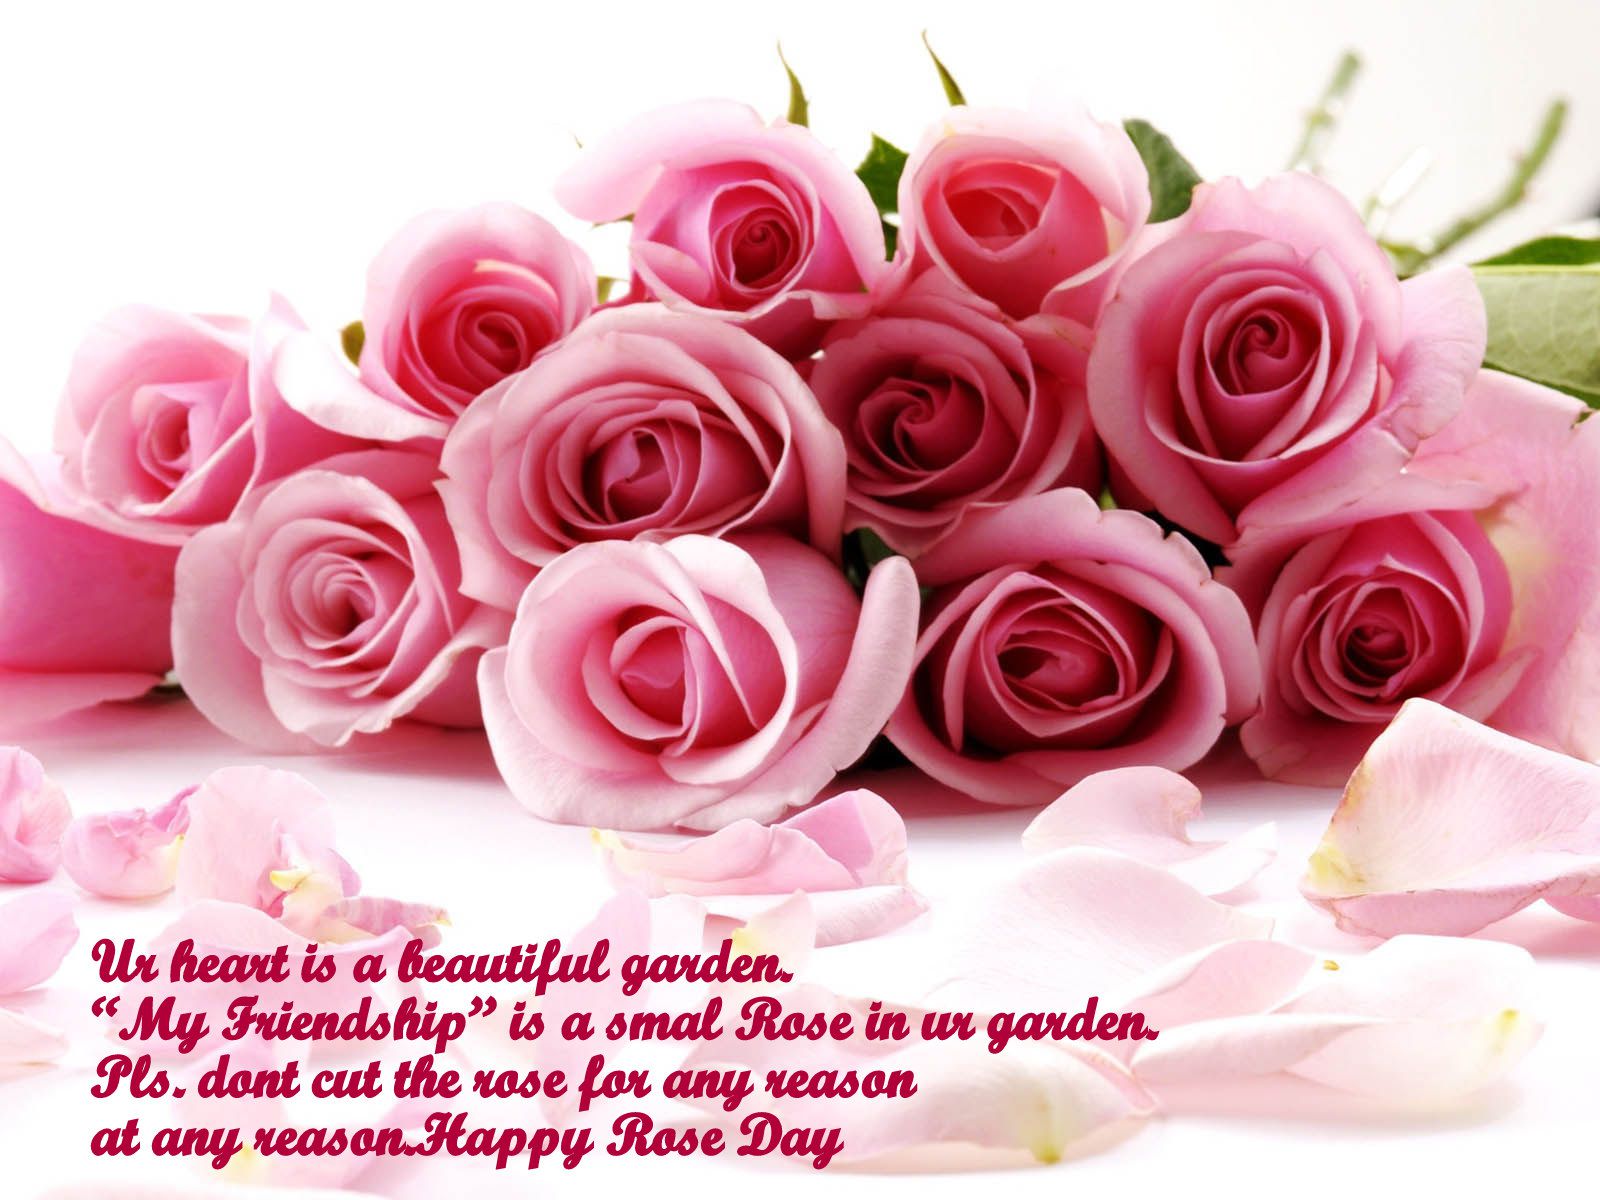 gulab full wallpaper,garden roses,pink,flower,rose,cut flowers